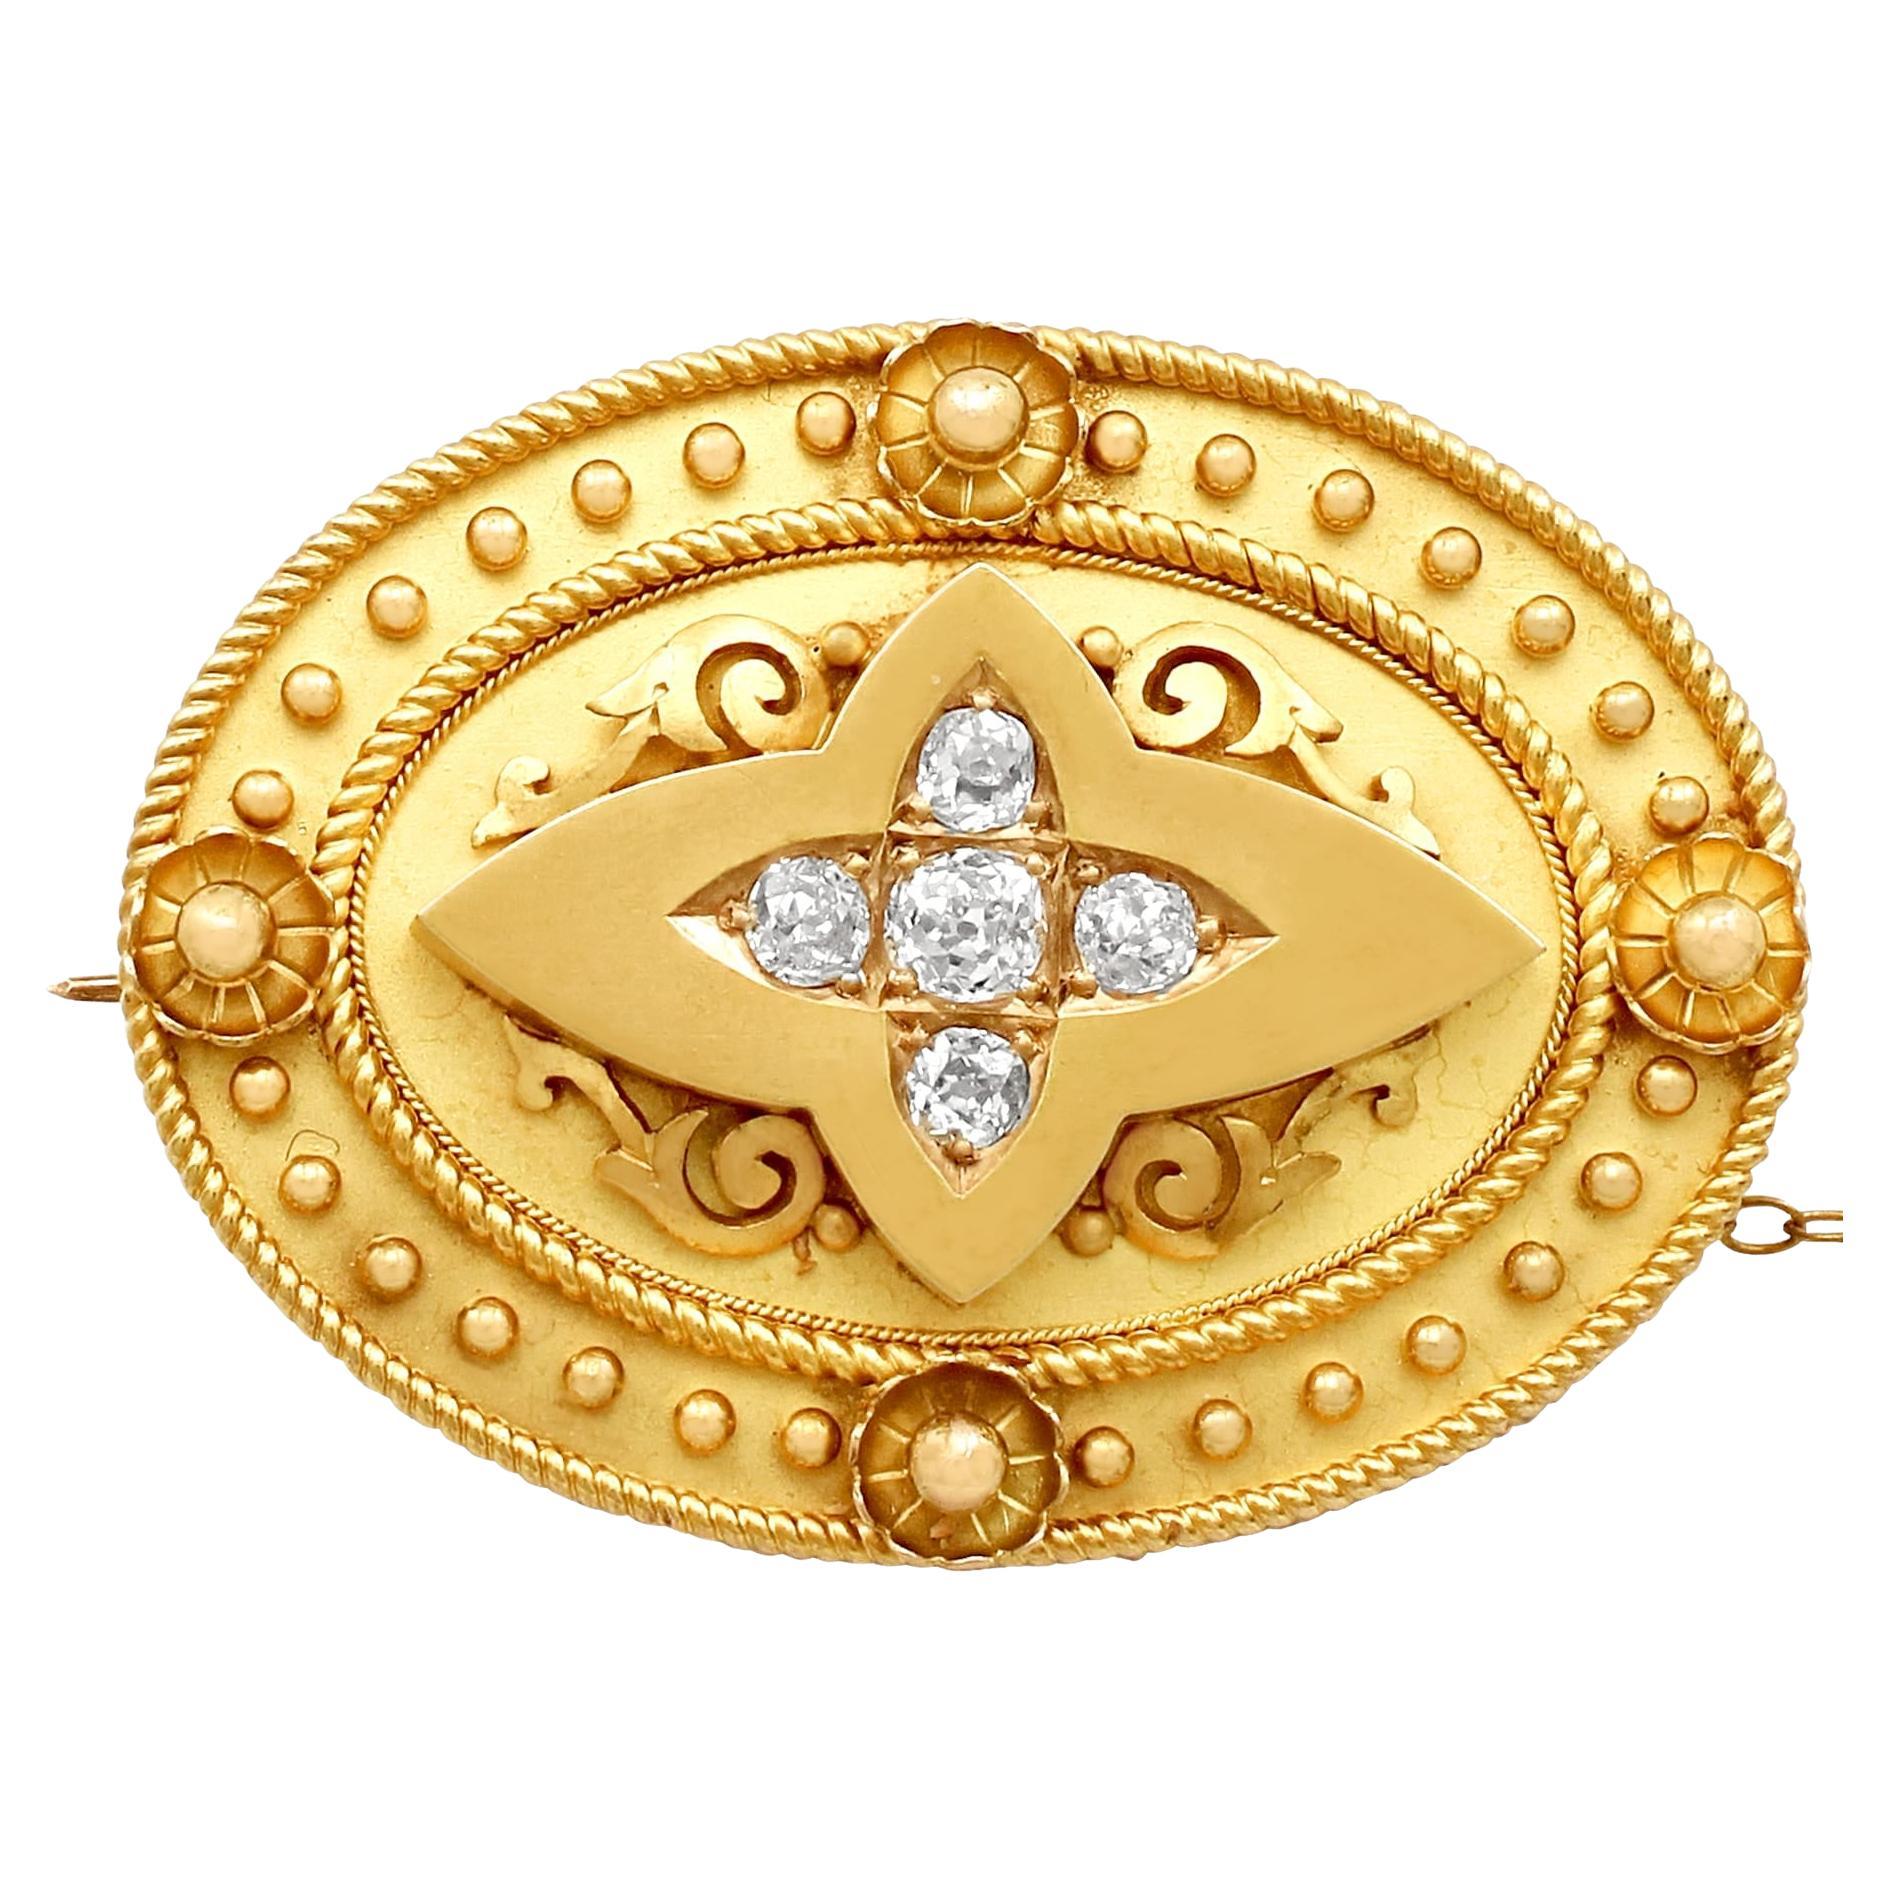 Antike viktorianische Diamant- und Gelbgold-Brosche oder -Medaillon